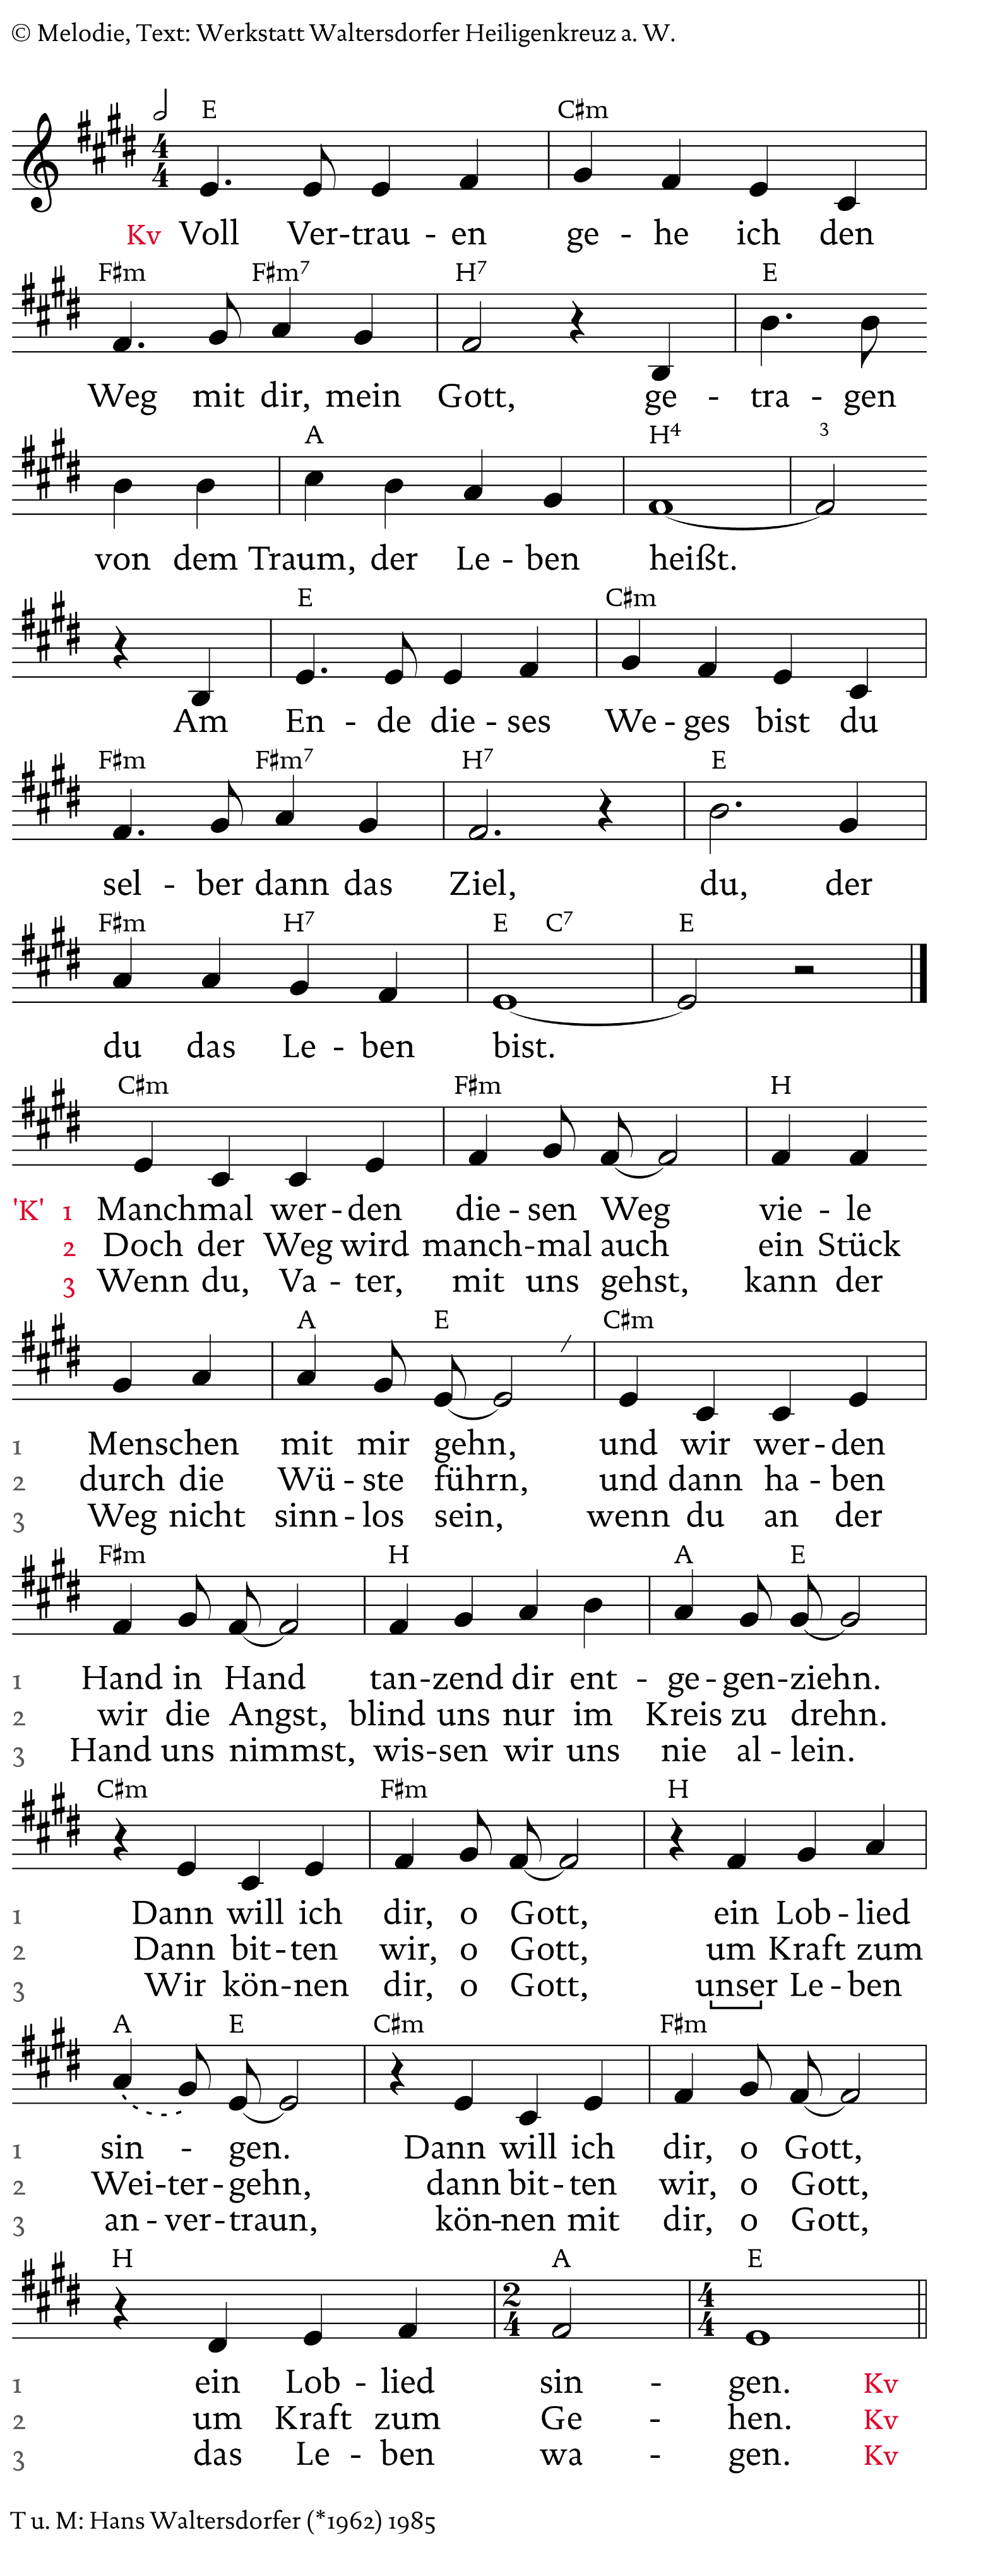 Gotteslob Lieder Zum Ausdrucken / Kirchlich Heiraten Lieder Erzbistum Koln